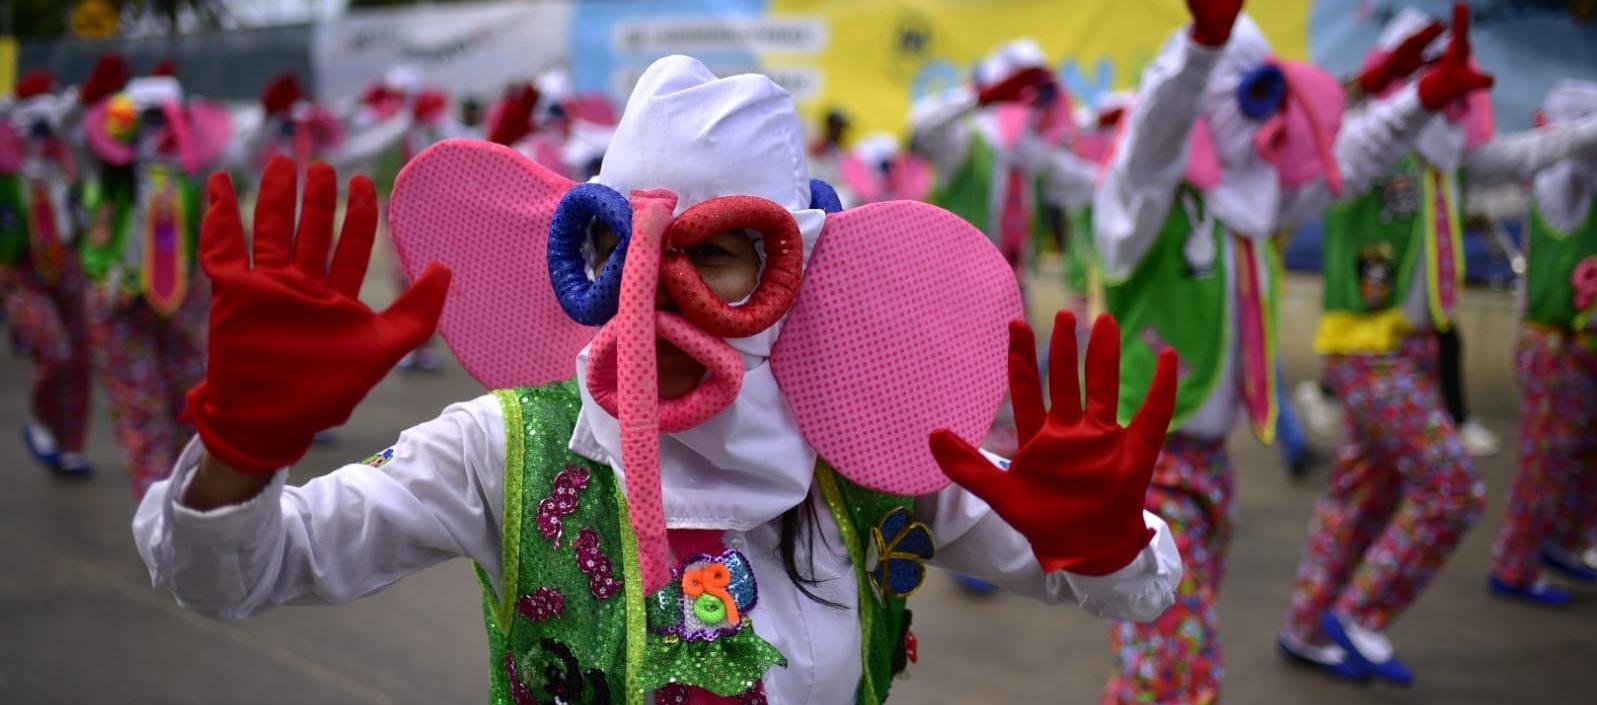 La marimonda, disfraz característico del Carnaval de Barranquilla. 